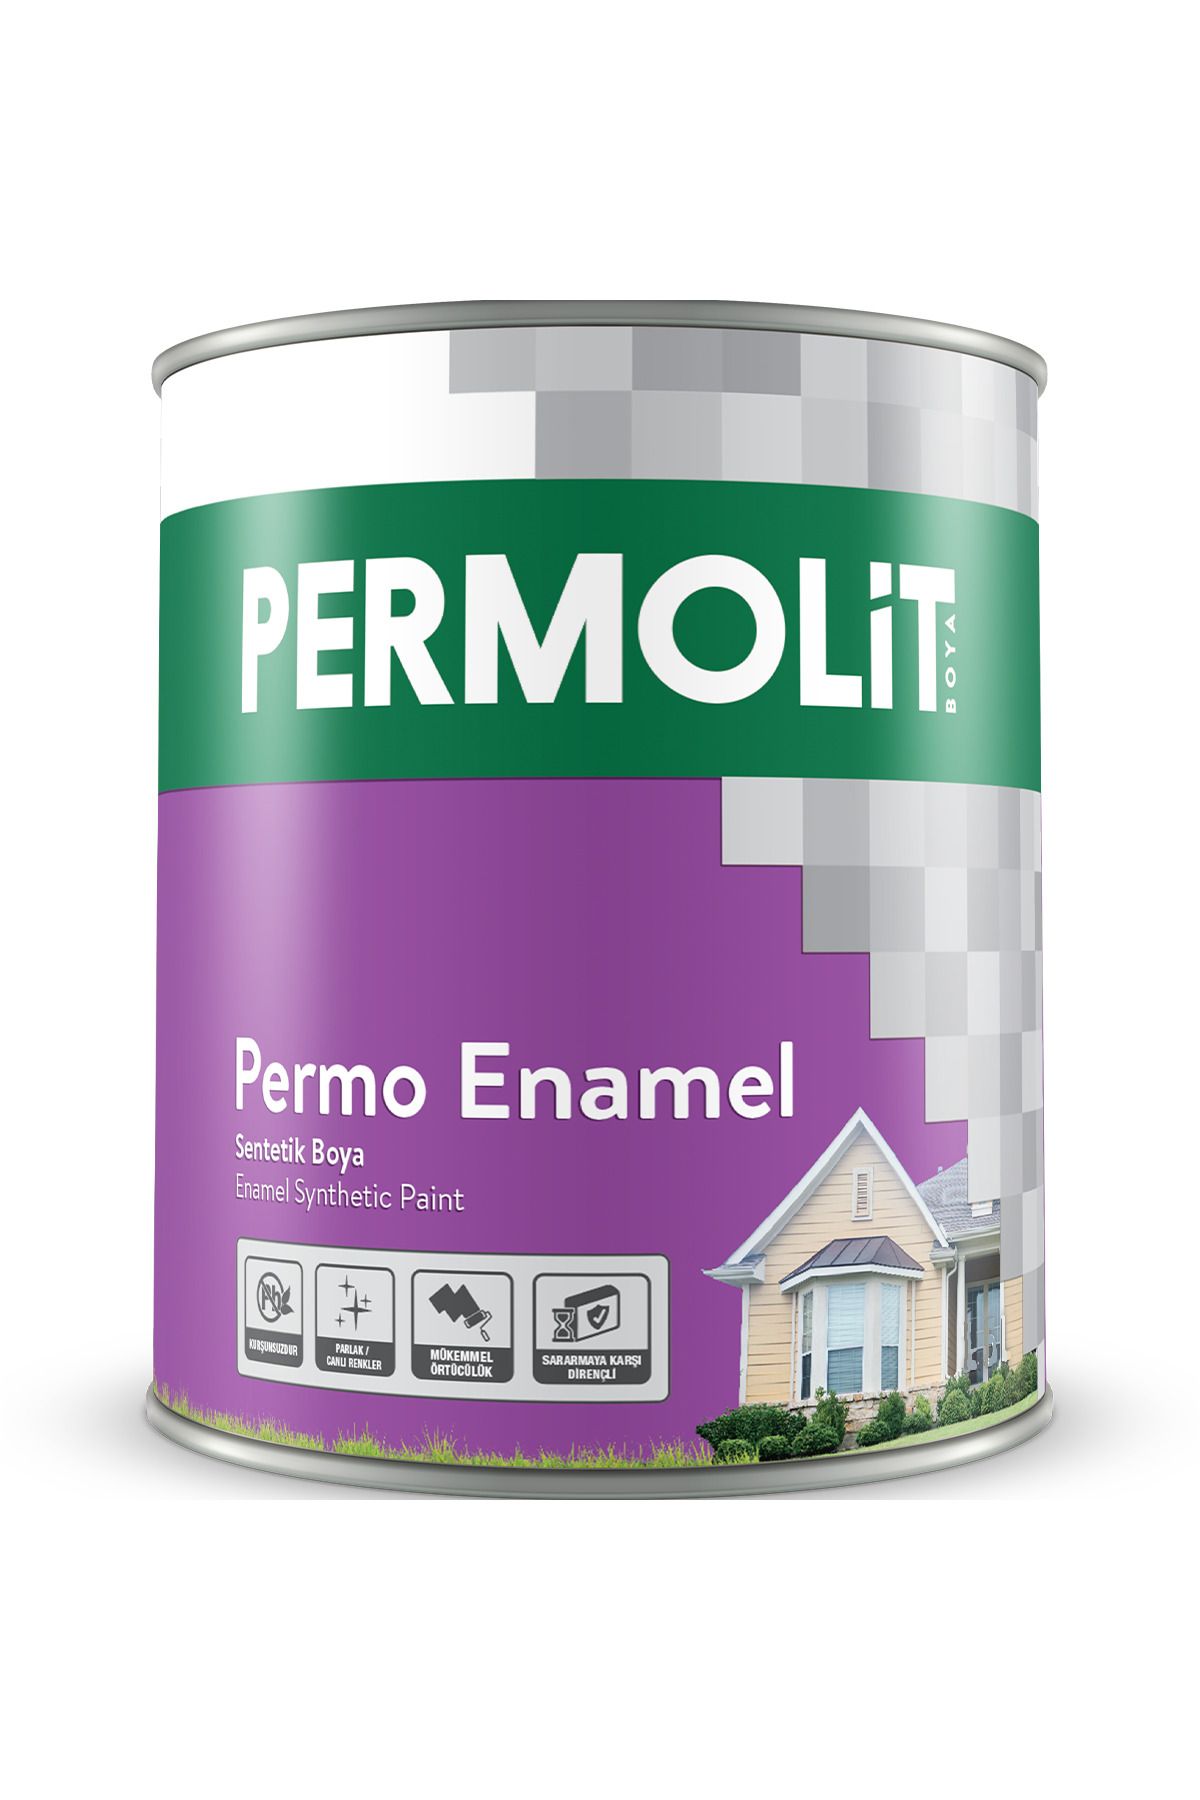 Permolit Permo Enamel Yeni Oksit Sarı Sentetik Boya 0,25 Lt. 34 Farklı Renk